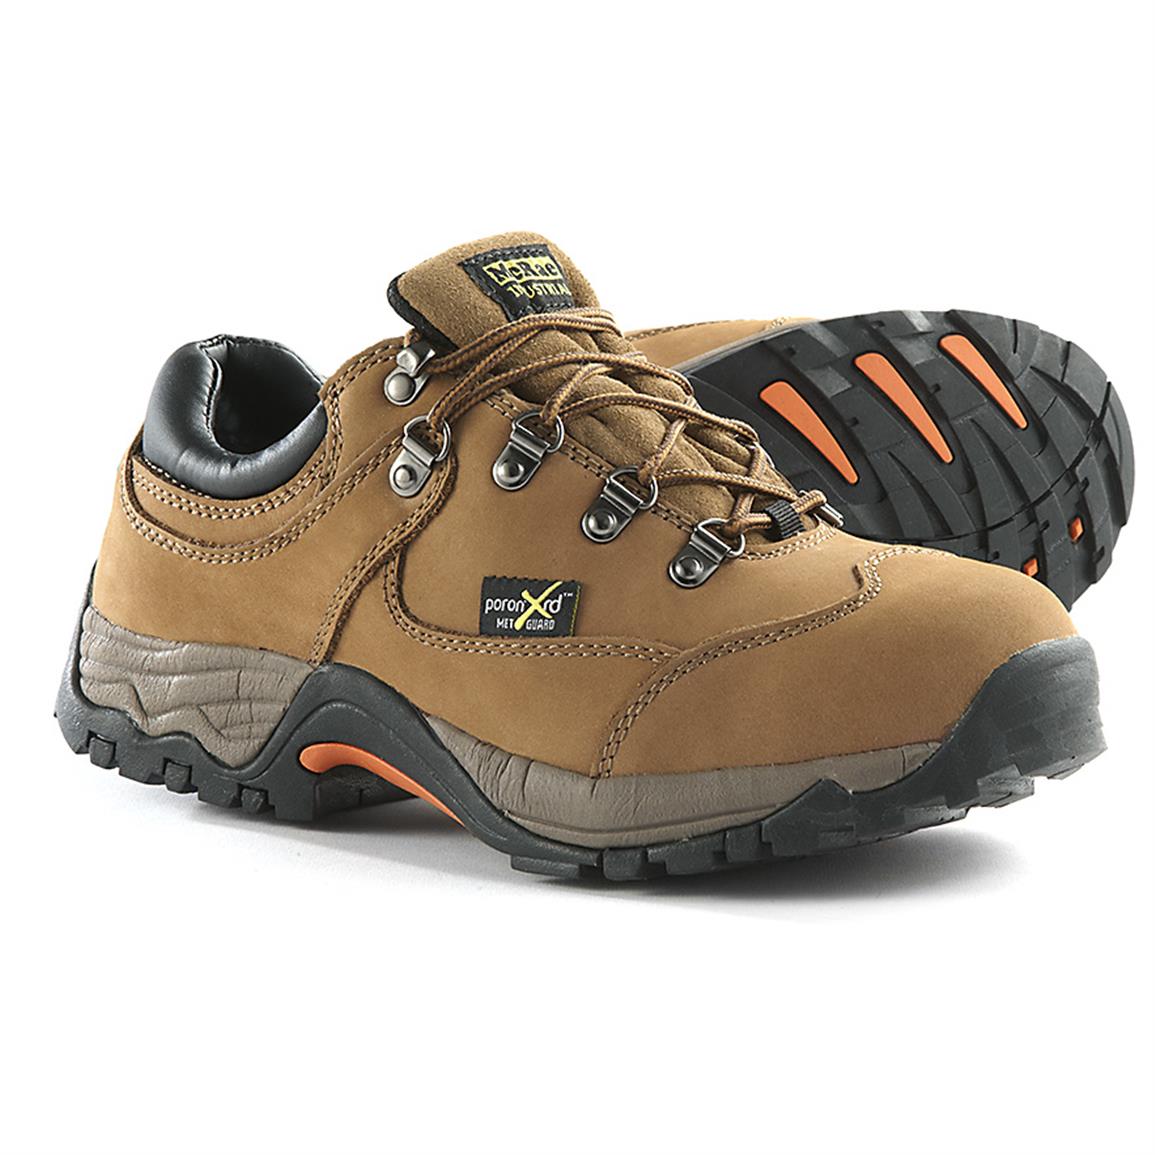 Men's McRae Steel Toe Met Guard Work Hiking Boots - 281621, Work Boots ...